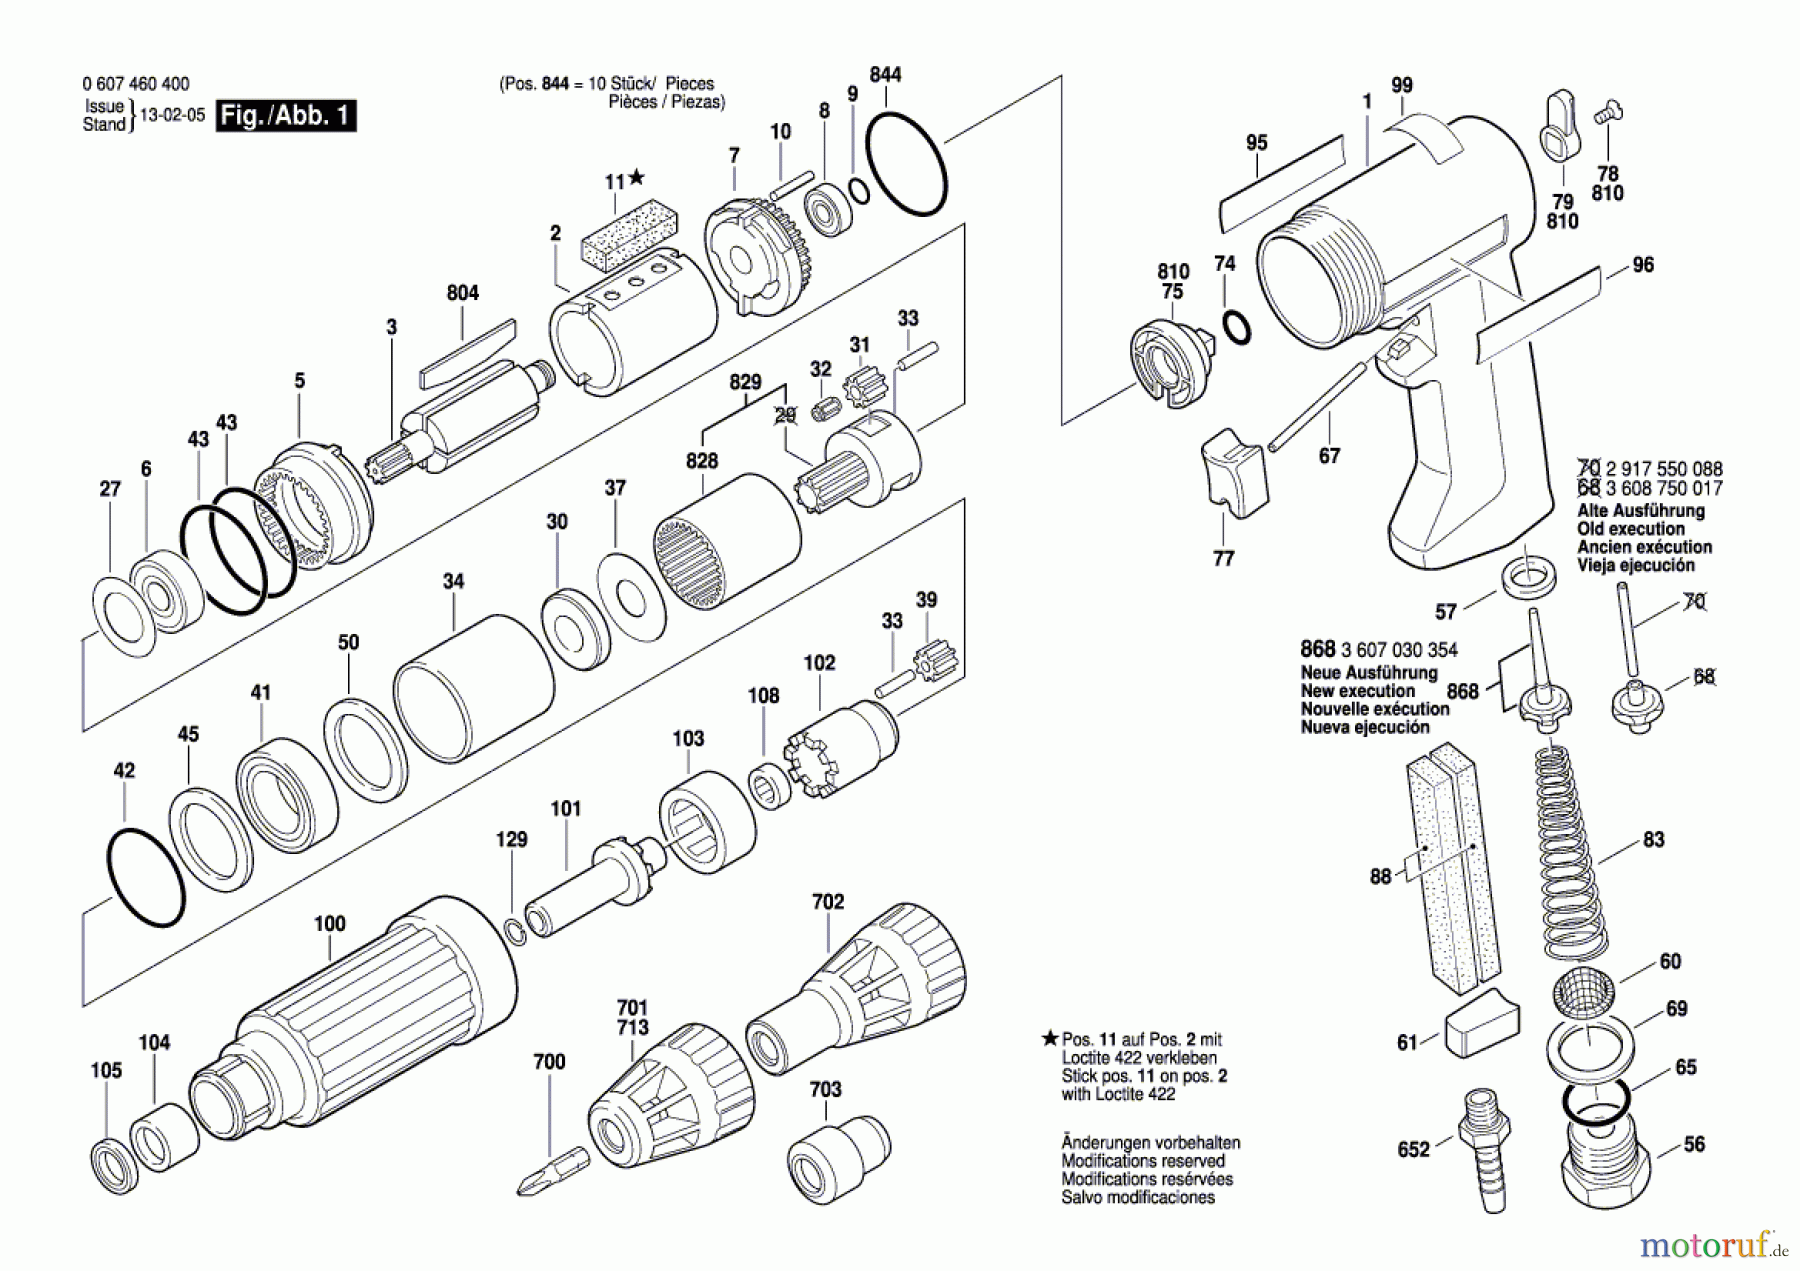  Bosch Werkzeug Pw-Schrauber-Serv 320 WATT-SERIE Seite 1